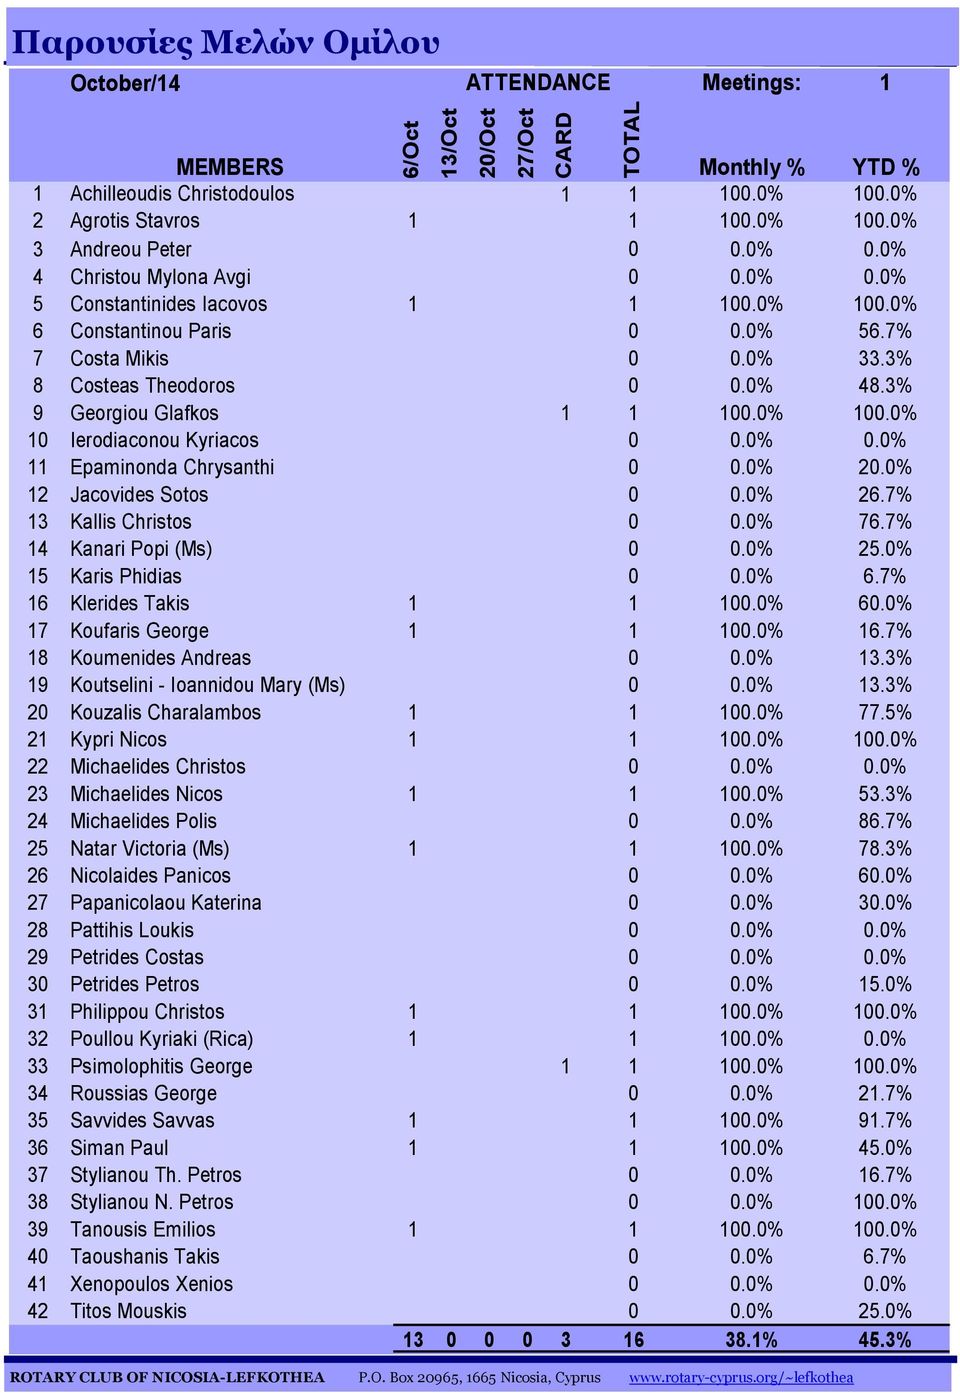 3% 9 Georgiou Glafkos 1 1 100.0% 100.0% 10 Ierodiaconou Kyriacos 0 0.0% 0.0% 11 Epaminonda Chrysanthi 0 0.0% 20.0% 12 Jacovides Sotos 0 0.0% 26.7% 13 Kallis Christos 0 0.0% 76.